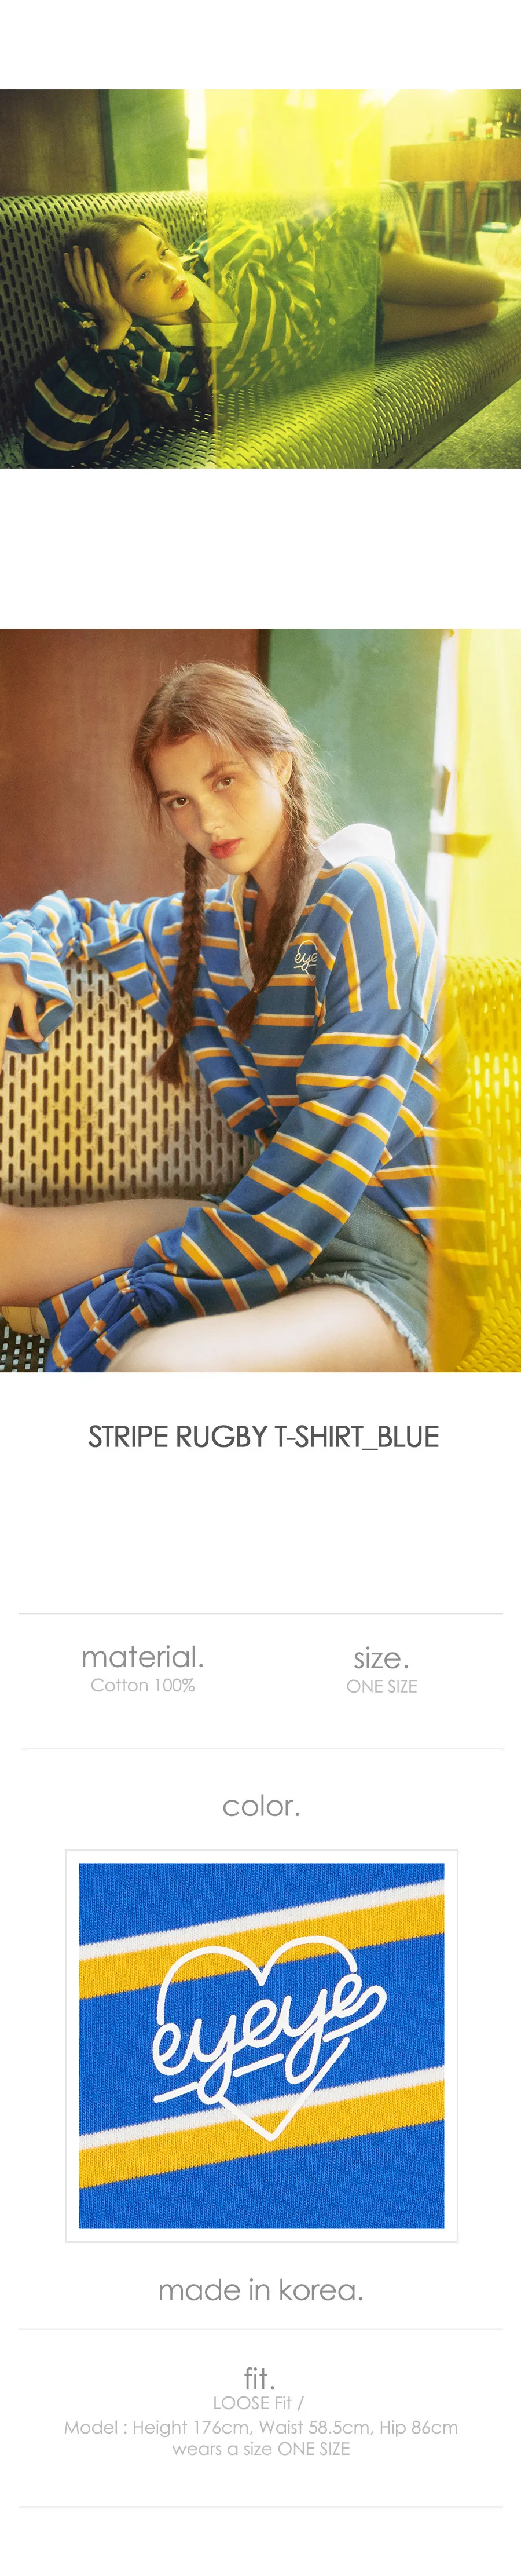 ボーダーラグビーシャツ(ブルー) | 詳細画像2